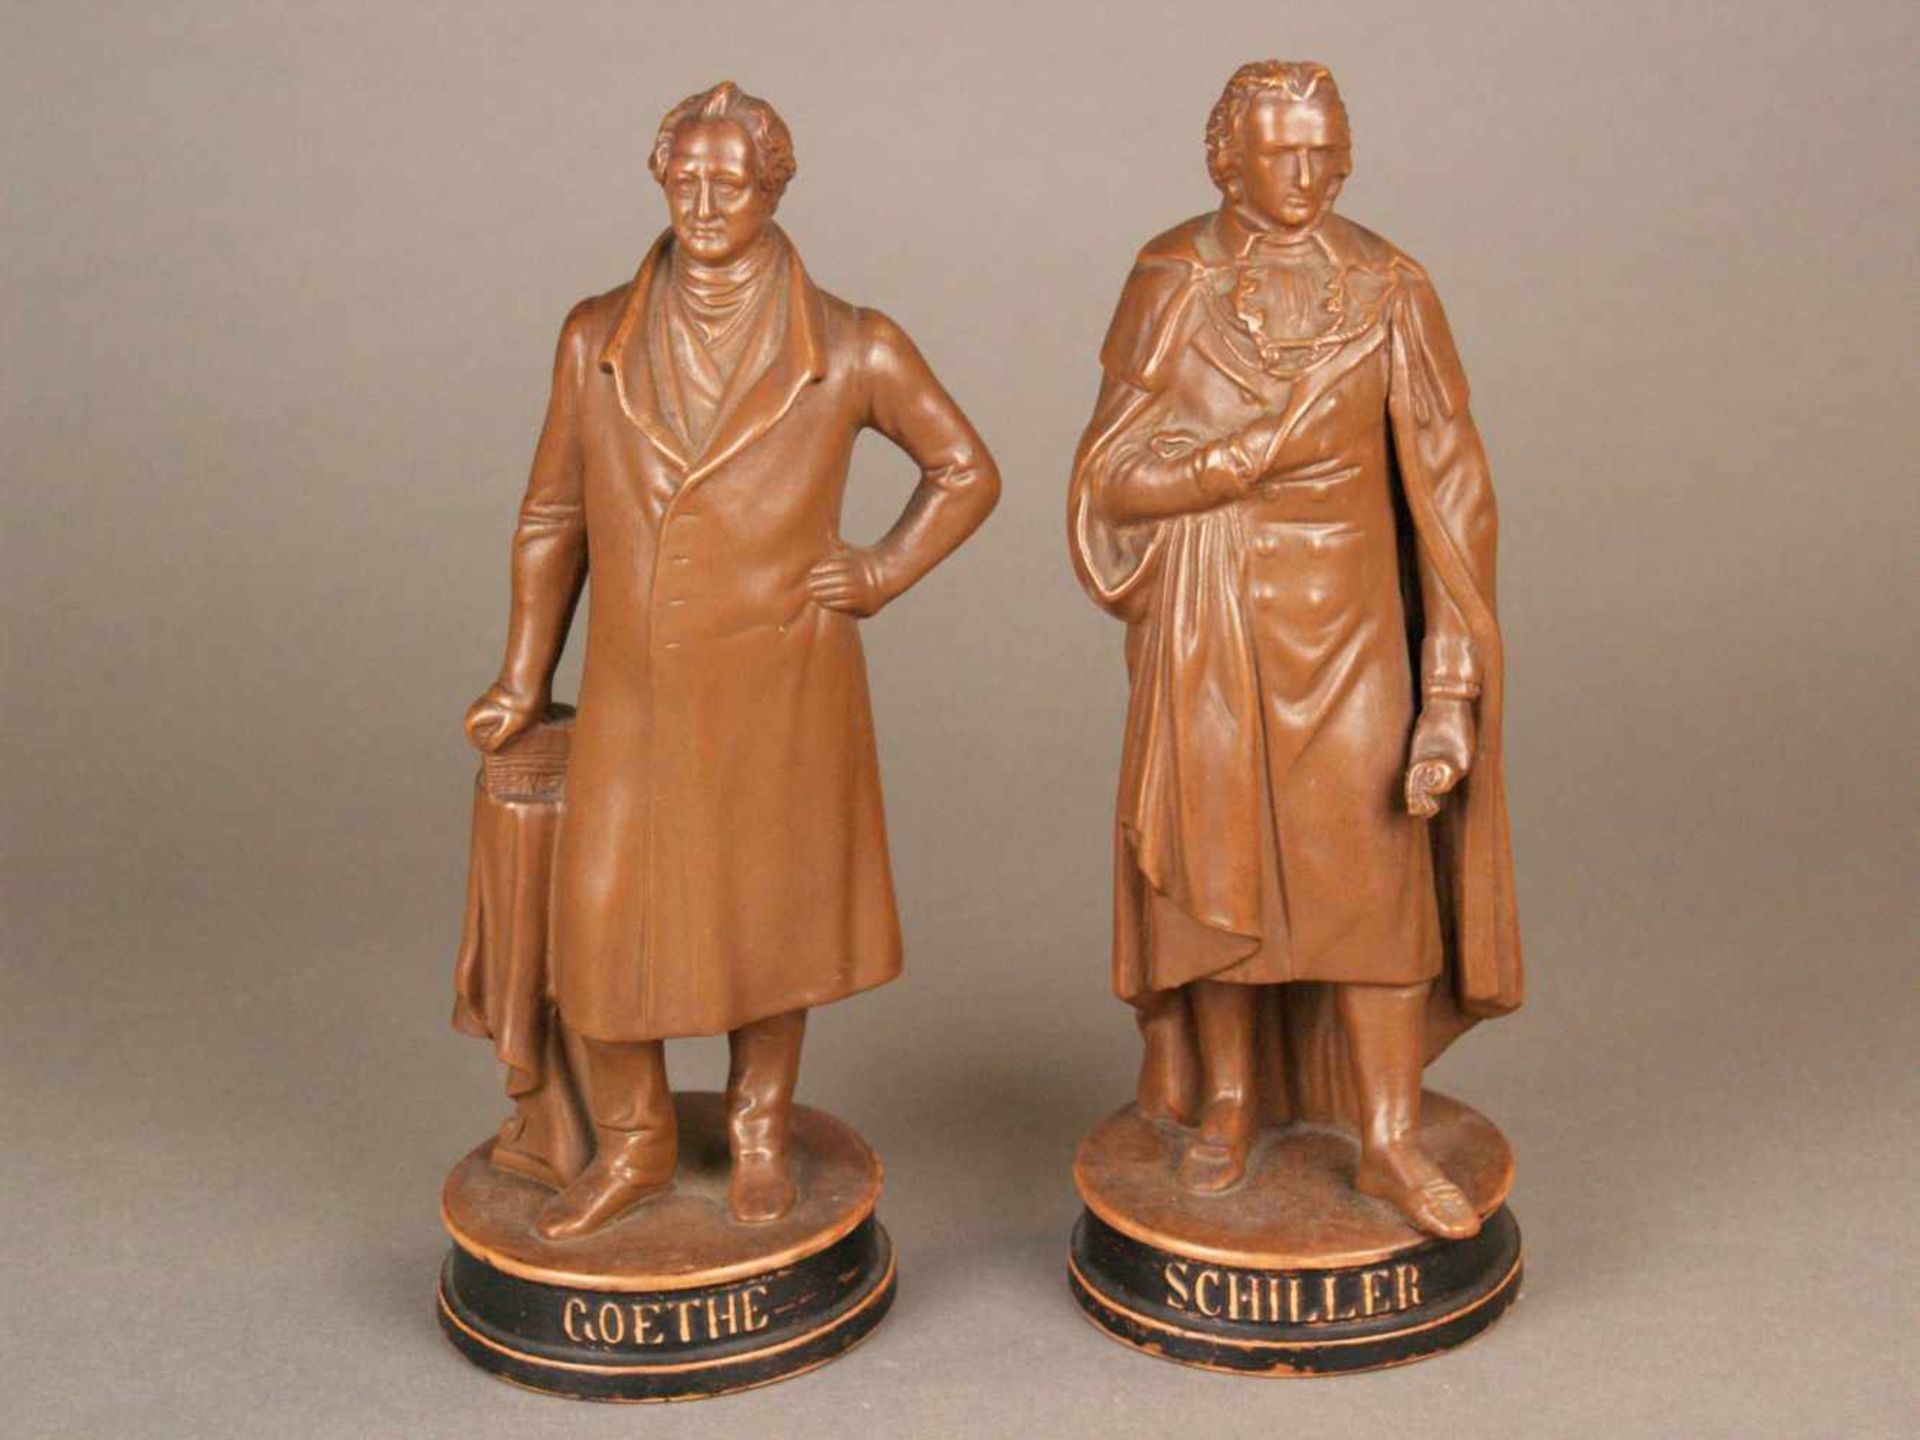 Paar Keramikfiguren Goethe und Schiller - zwei vollplastischen Ganzkörper-Figuren, braun glasiert,